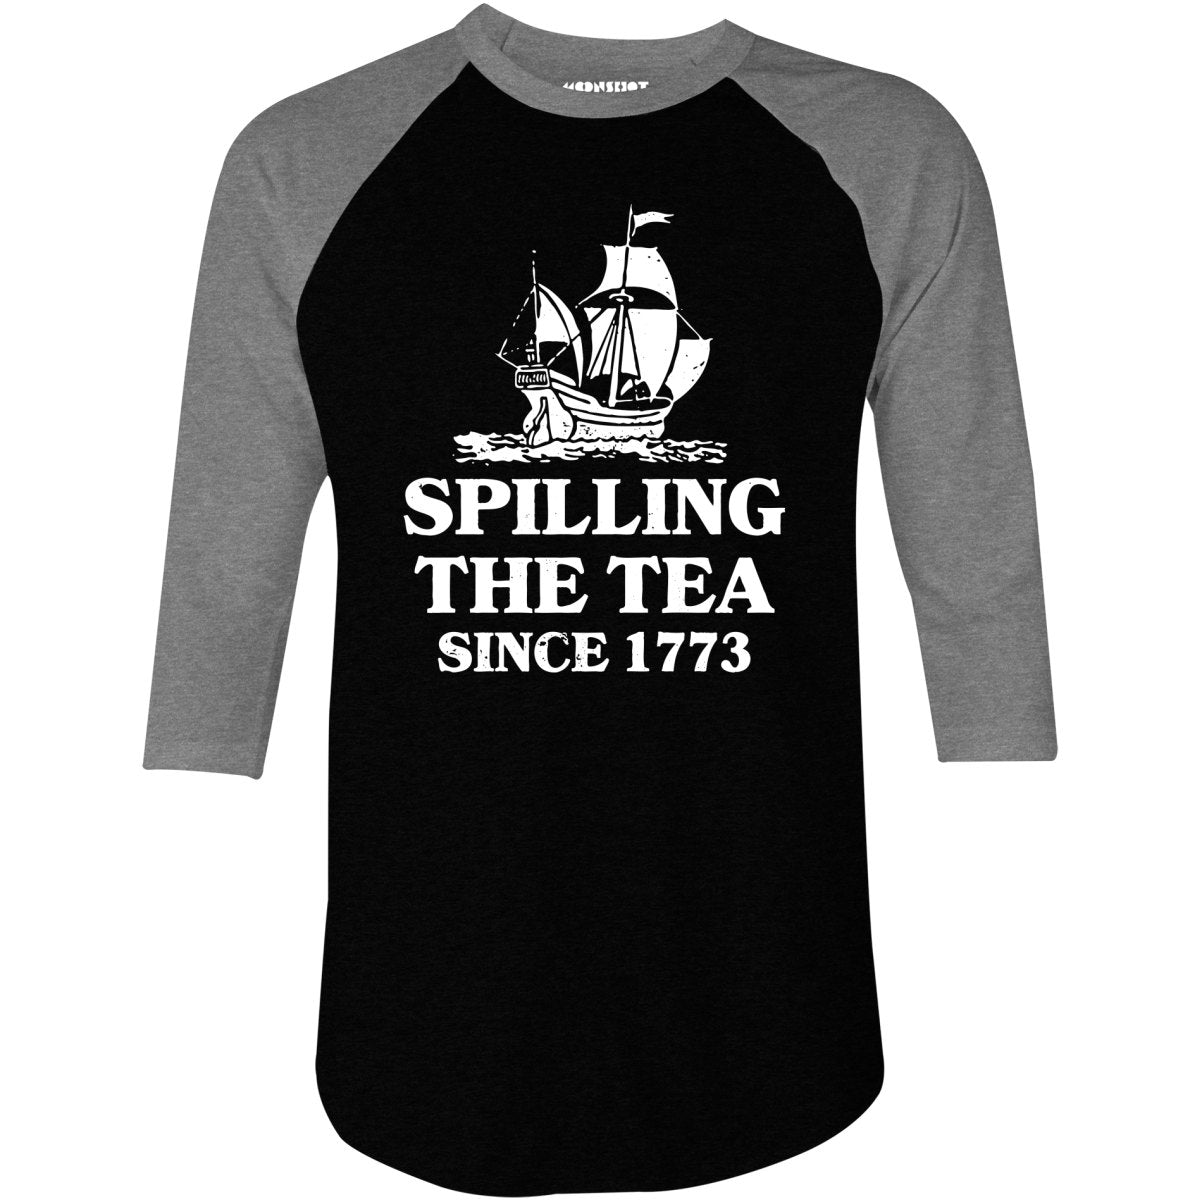 Spilling The Tea Since 1773 - 3/4 Sleeve Raglan T-Shirt